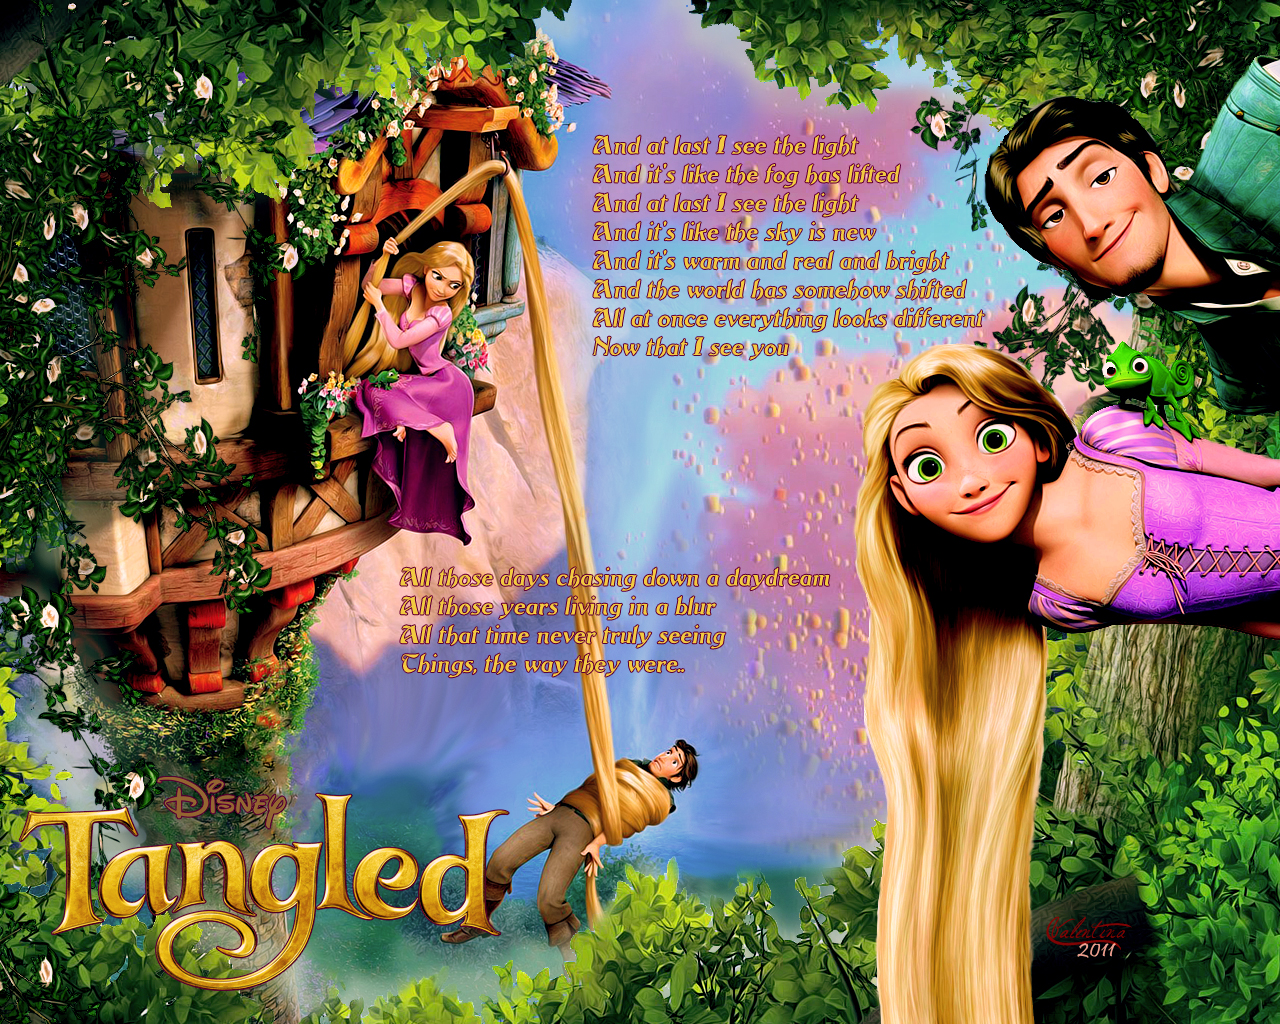 Tangled wallpaper - Rapunzel (of Disney's Tangled) Wallpaper ...